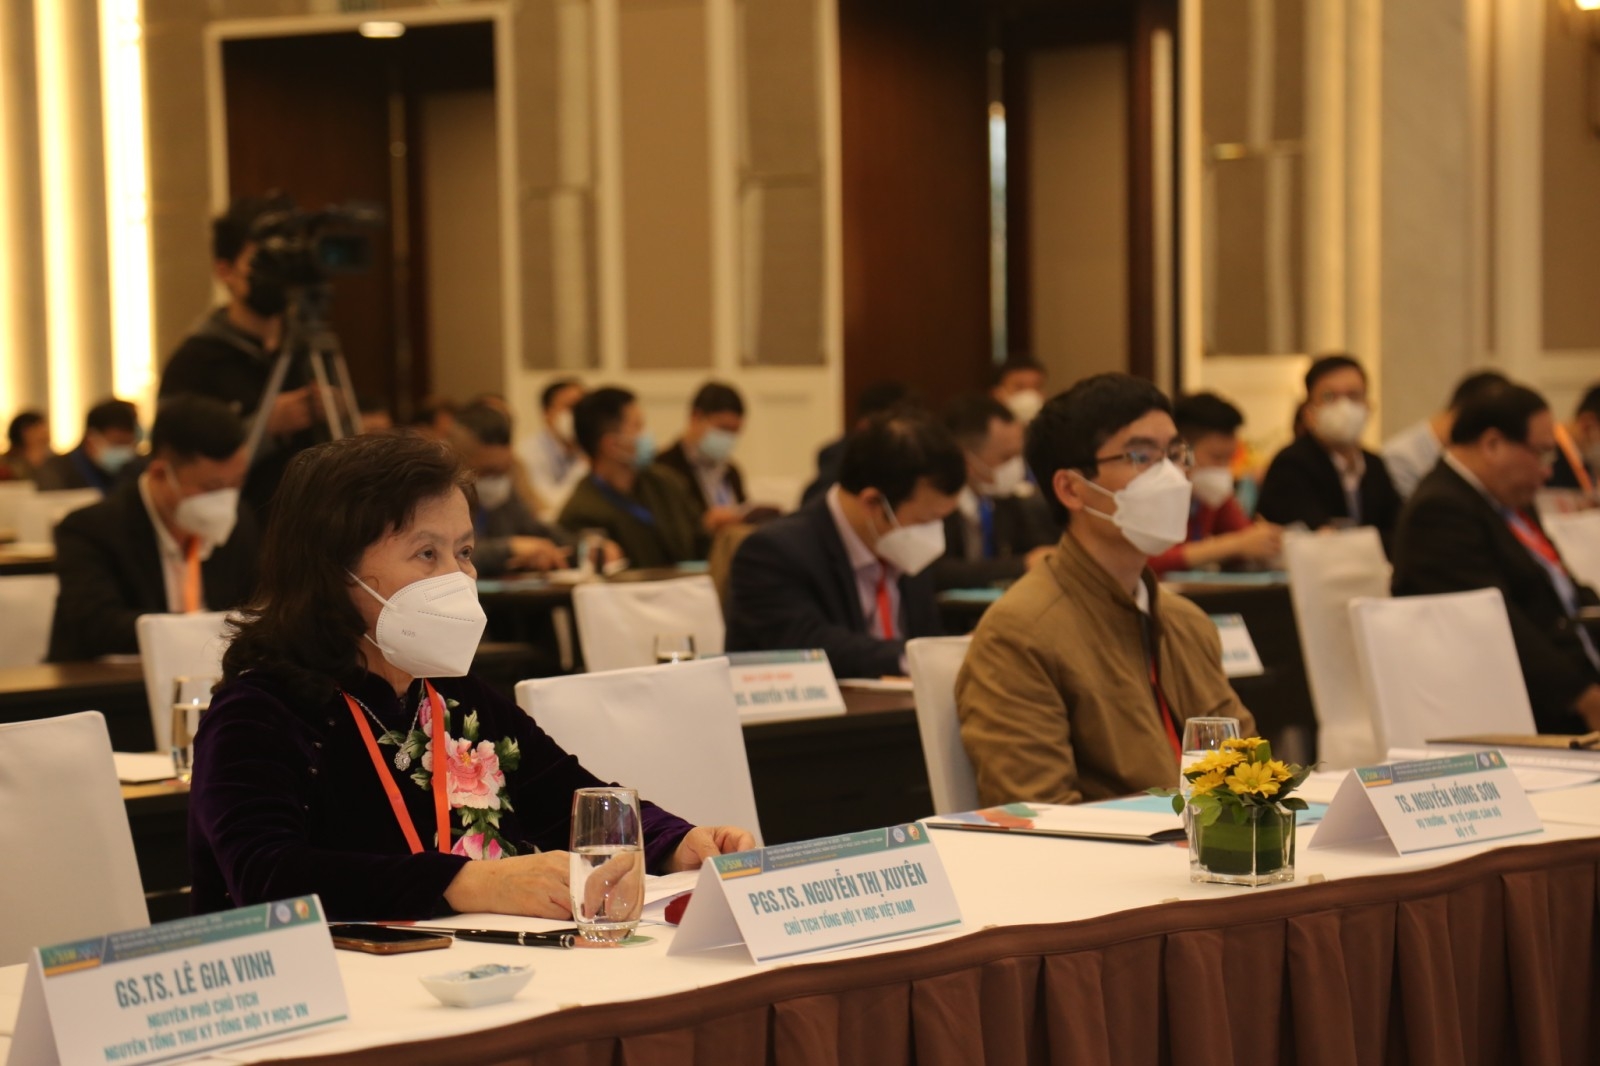 Hội nghị Khoa học toàn quốc 22 - Hội nghị Y học giới tính Việt Nam